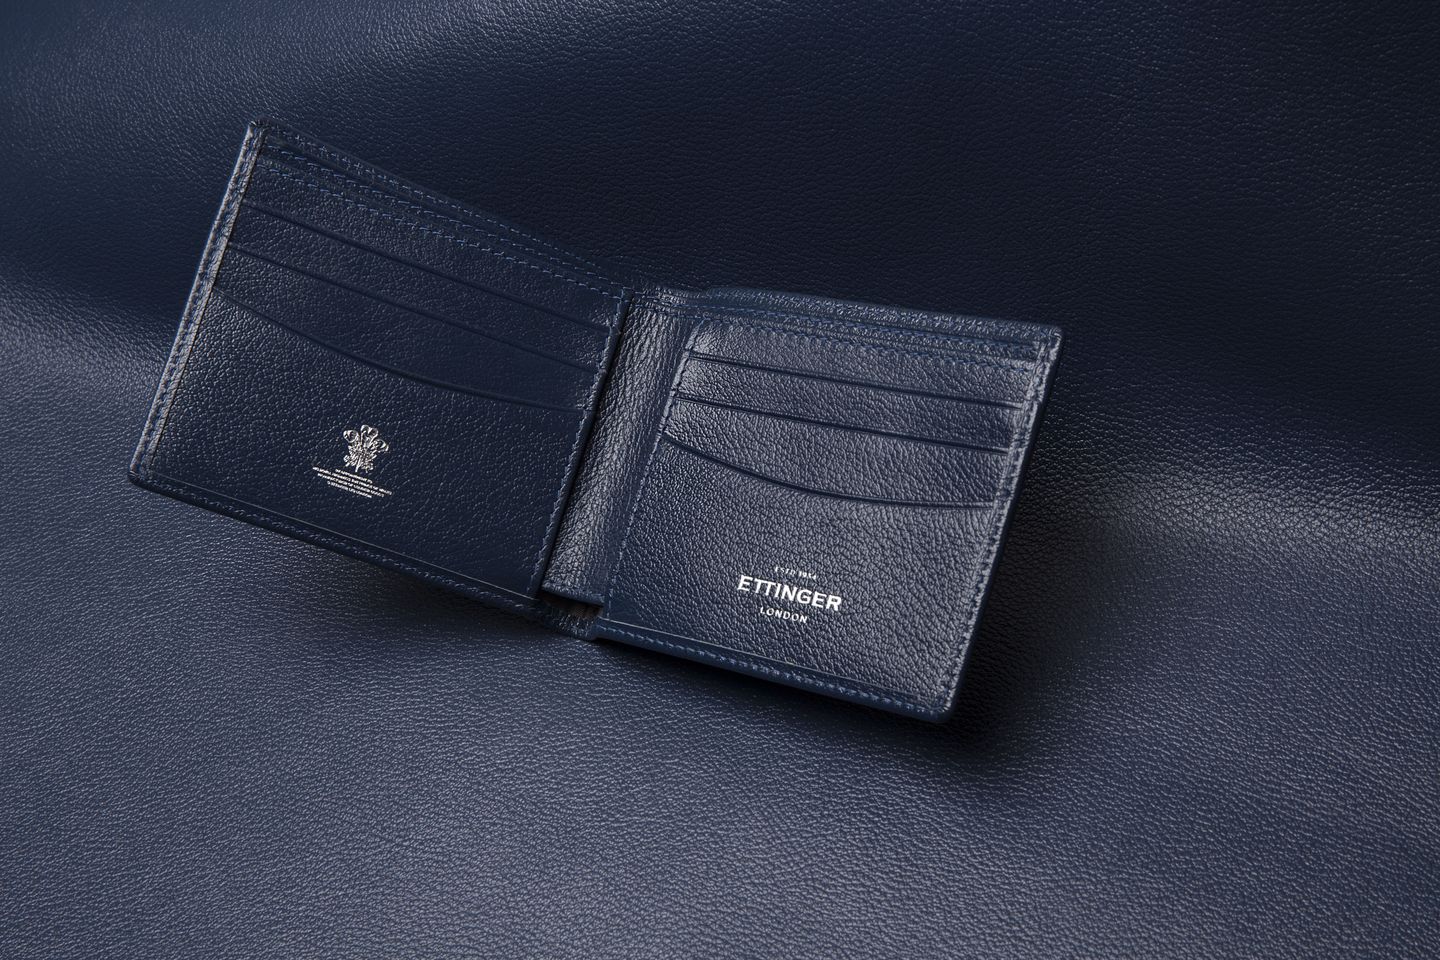 Ettinger Marine Blue Capra Leather 6 C/C Billfold Wallet